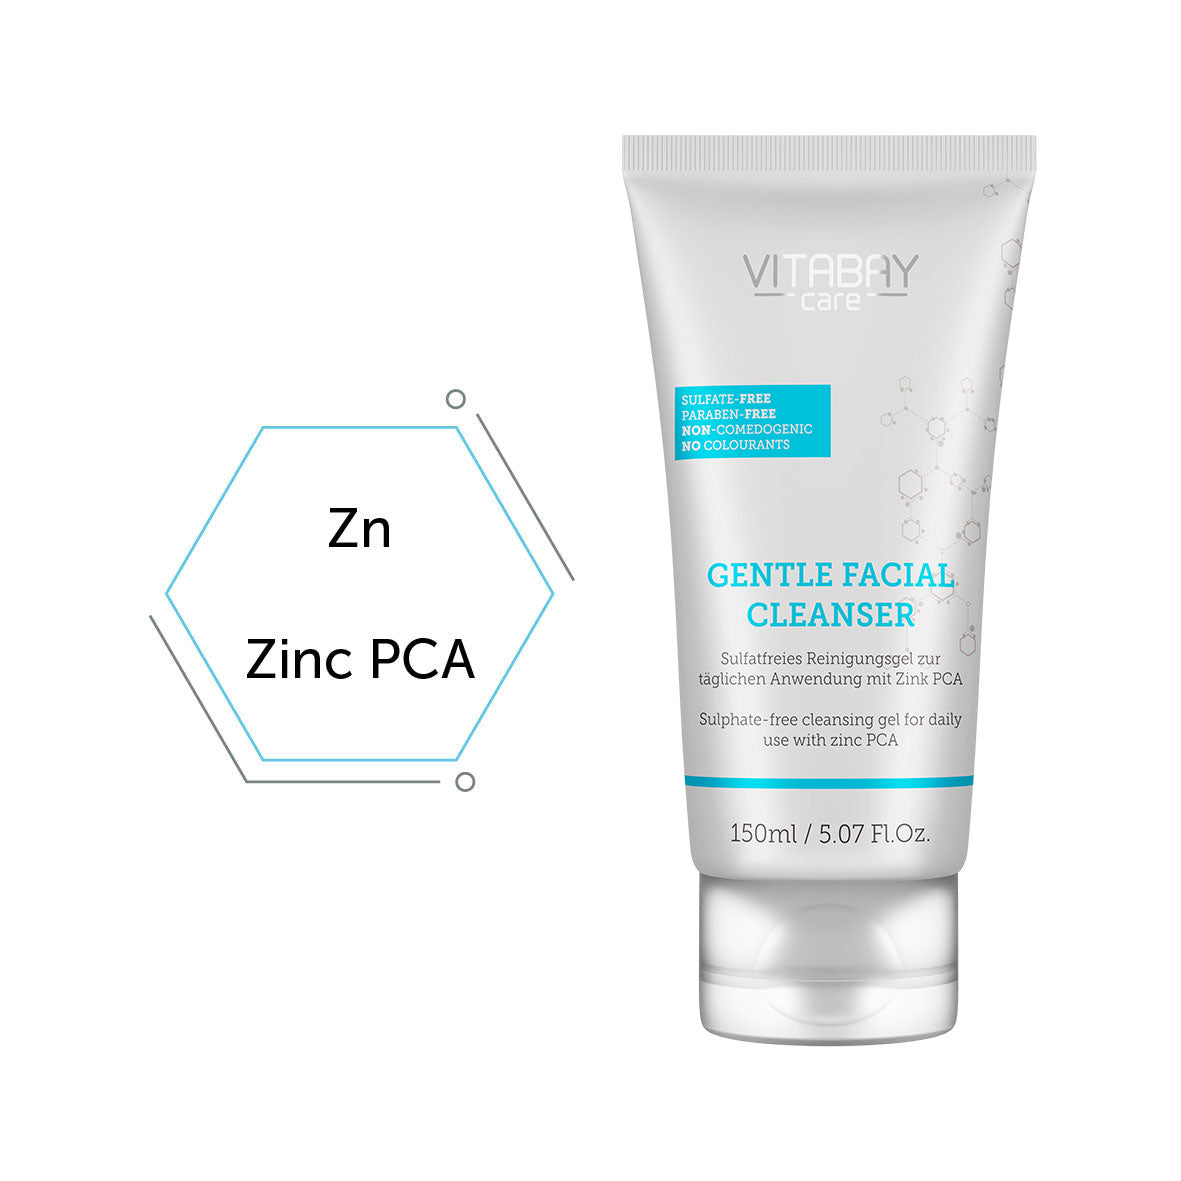 Gentle Facial Cleanser – Sulfatfreies Reinigungsgel mit Zink PCA - 150ml